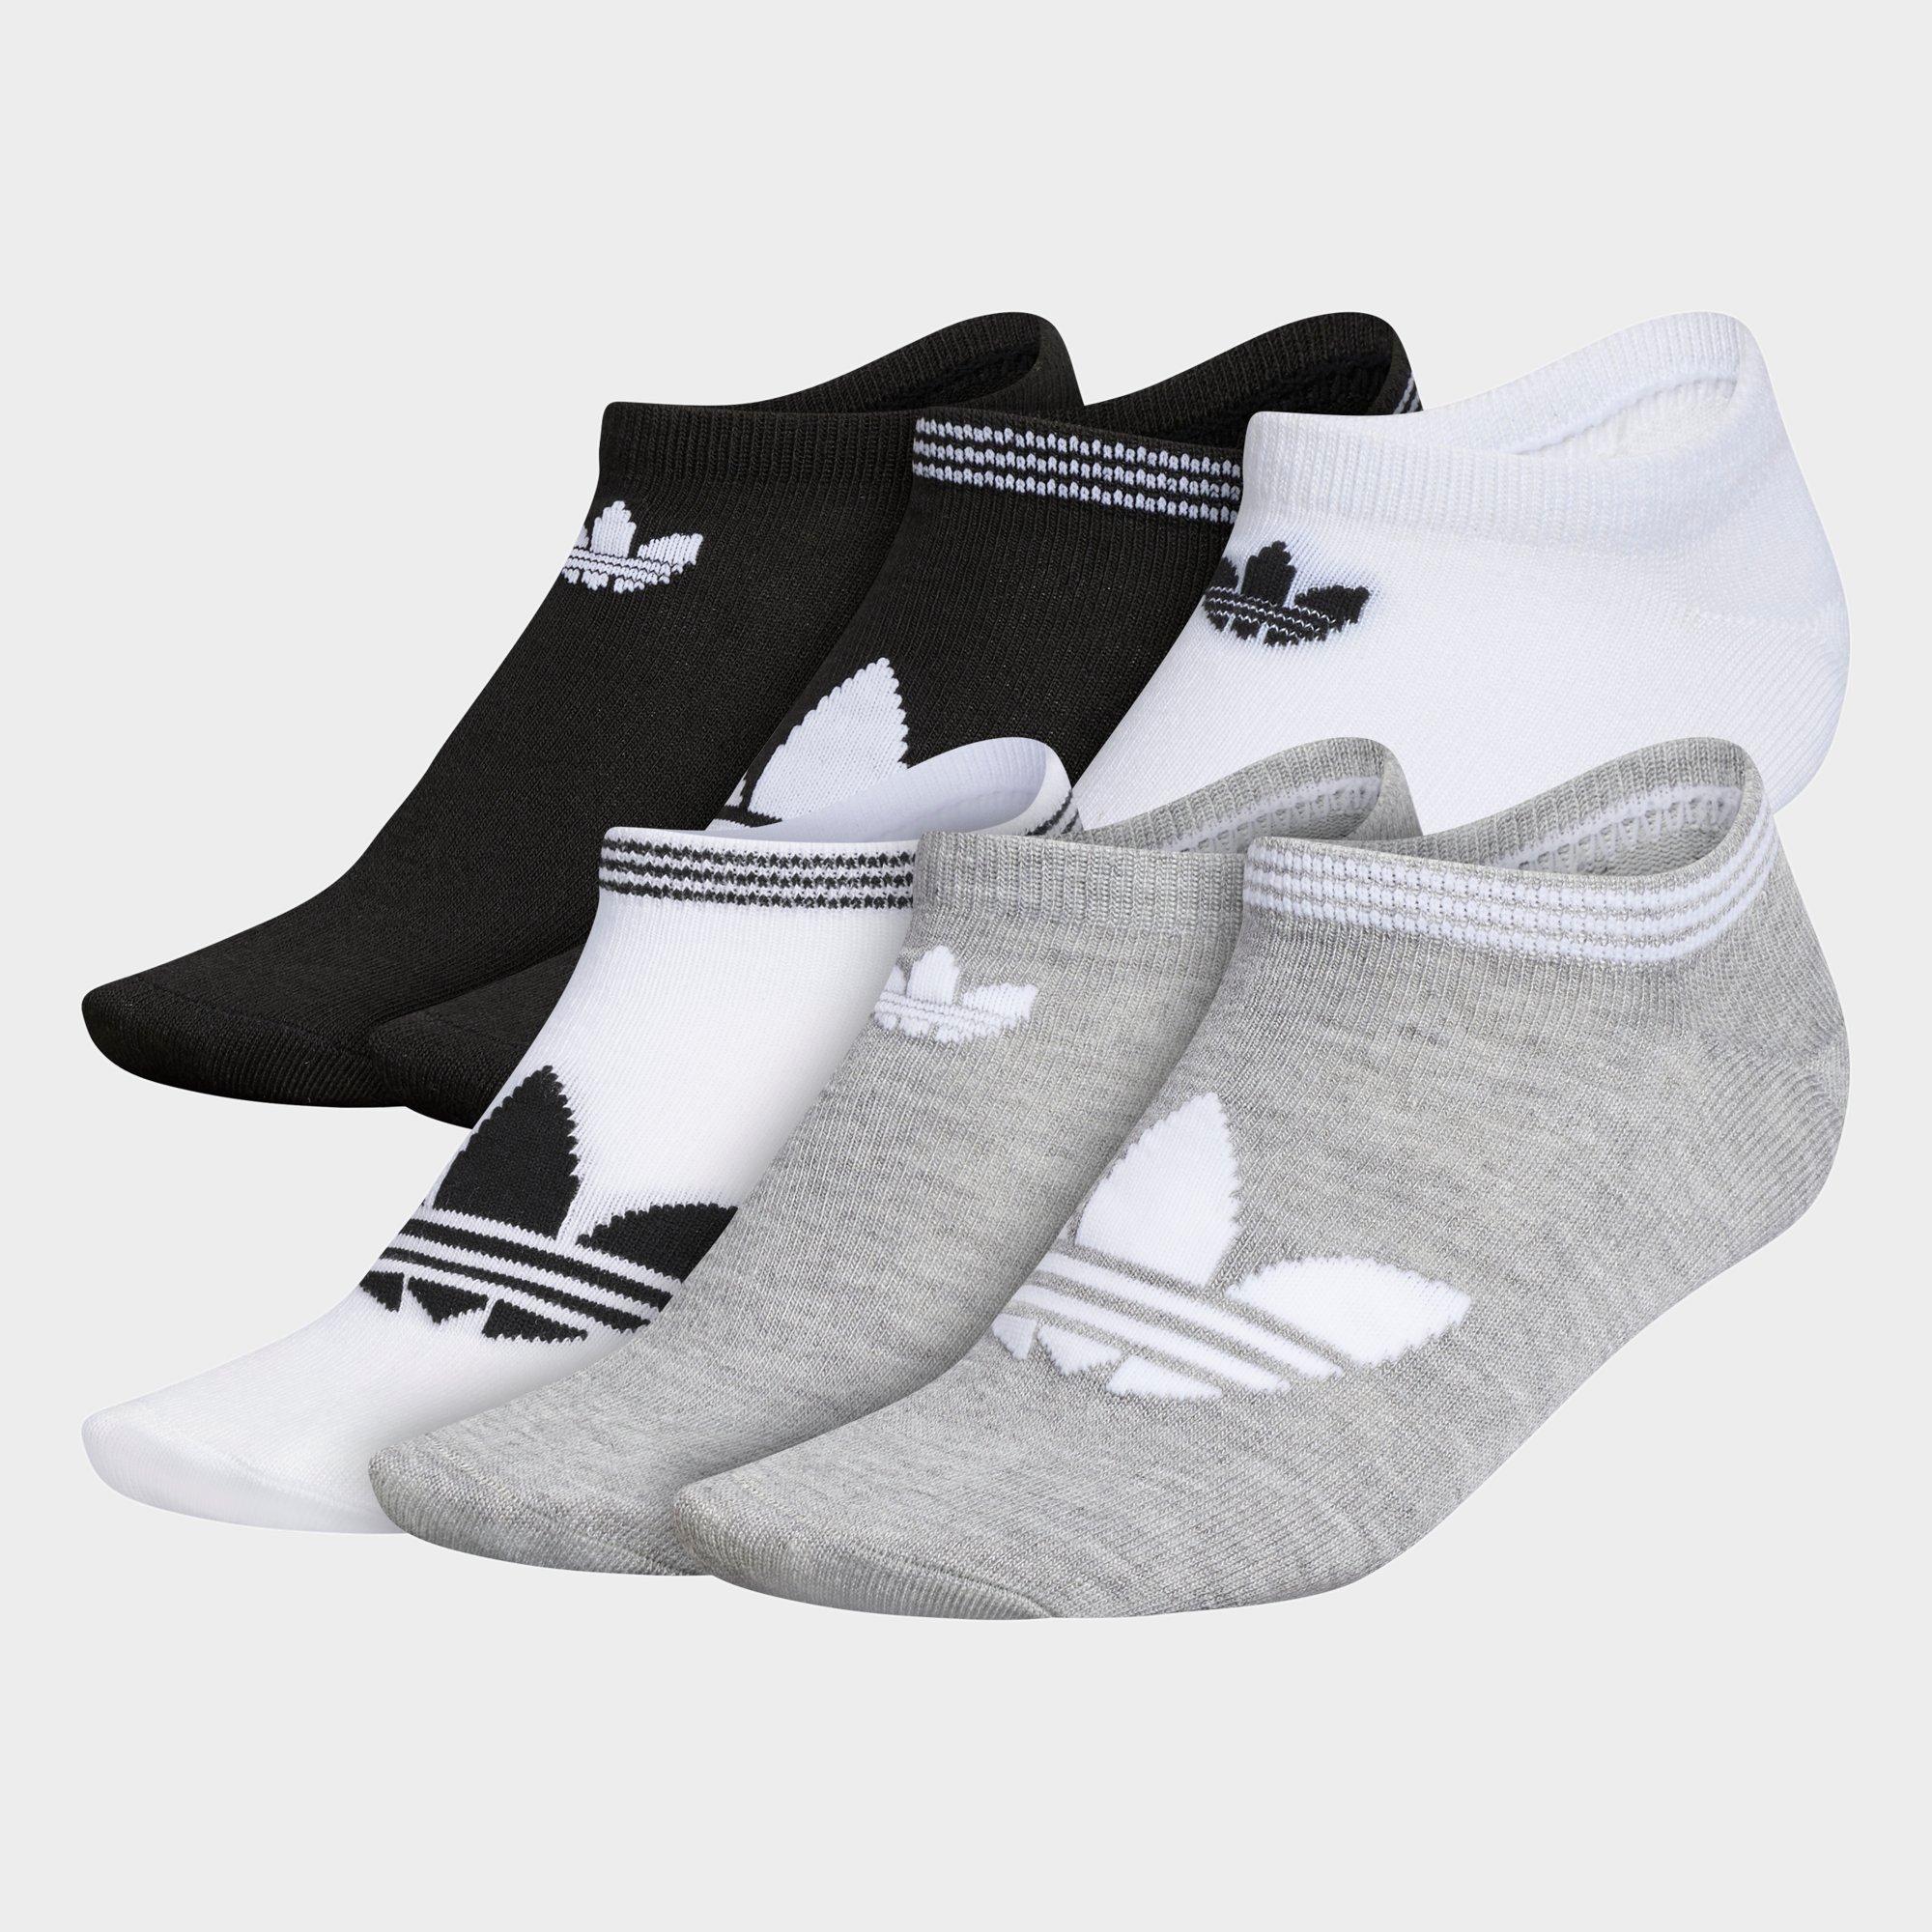 jd sports adidas socks